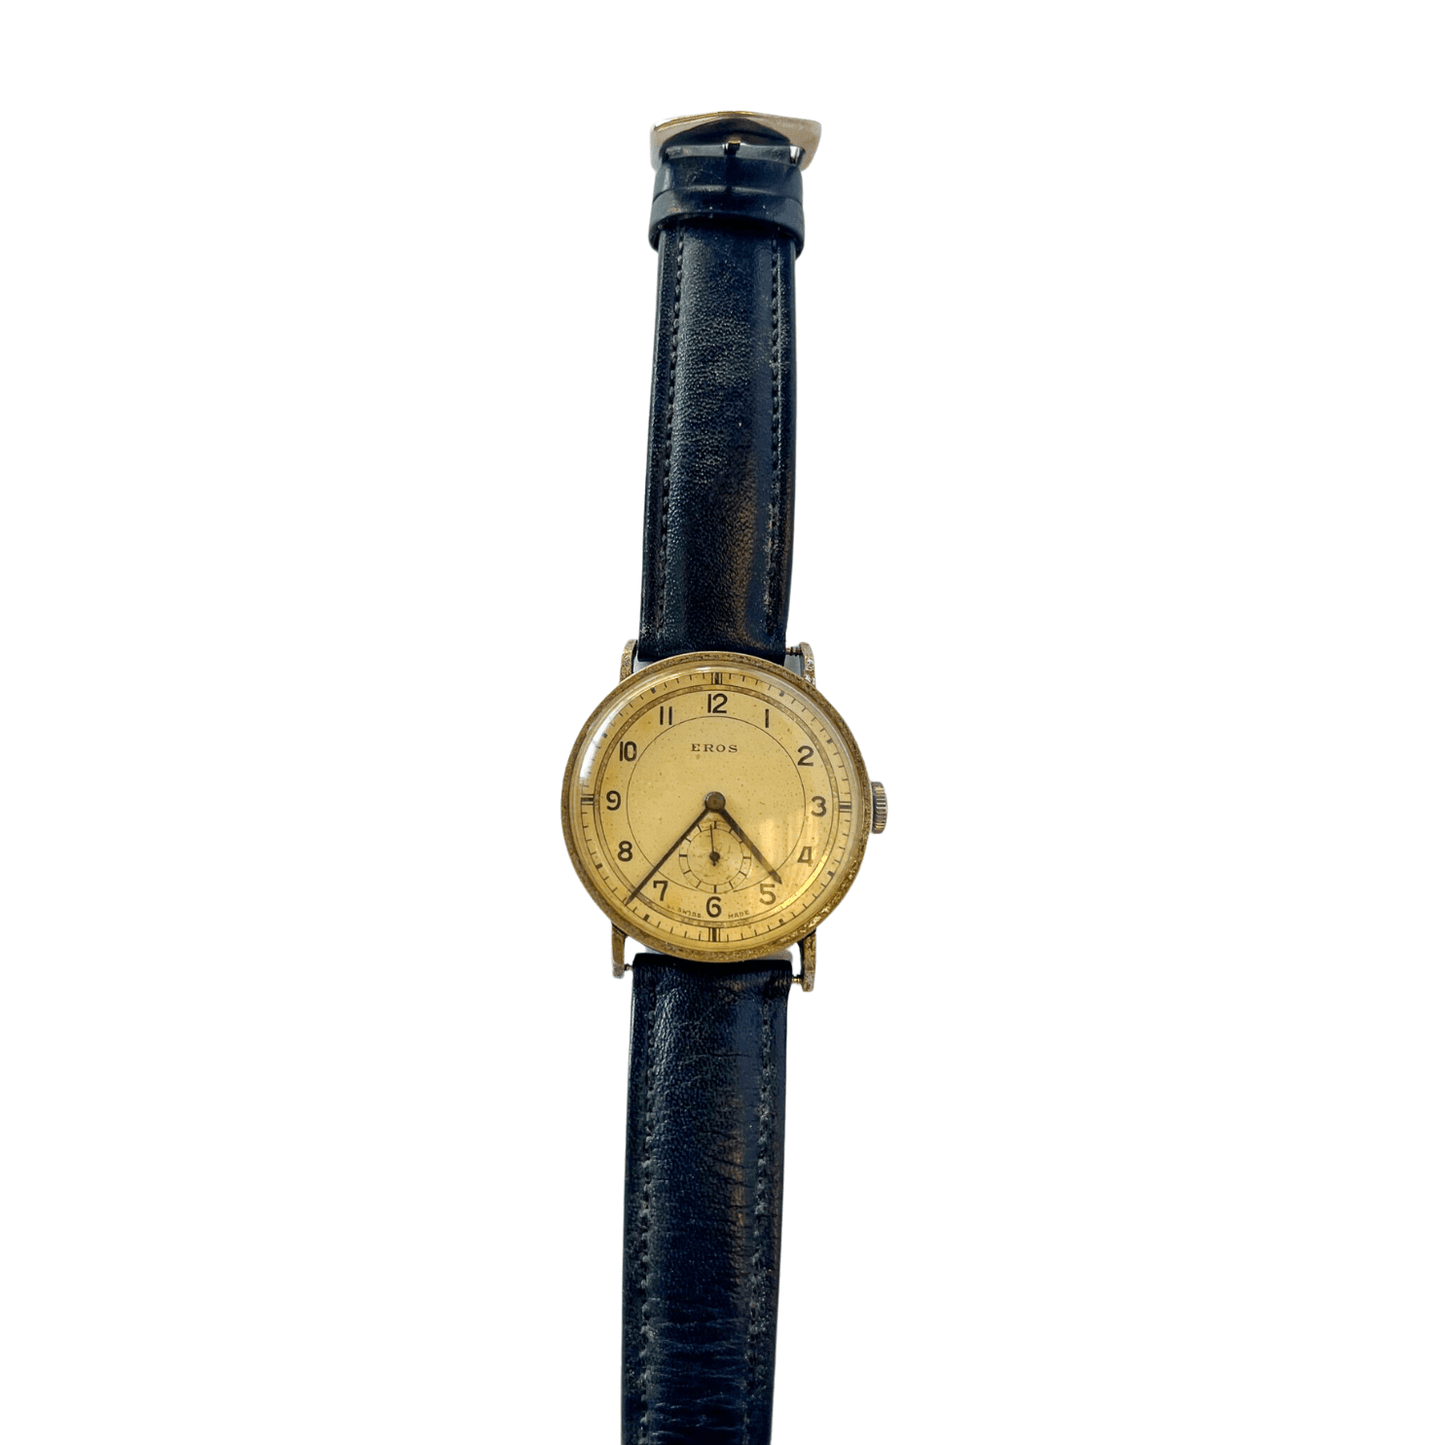 Relógio Militar Suíço Eros dos anos 1930